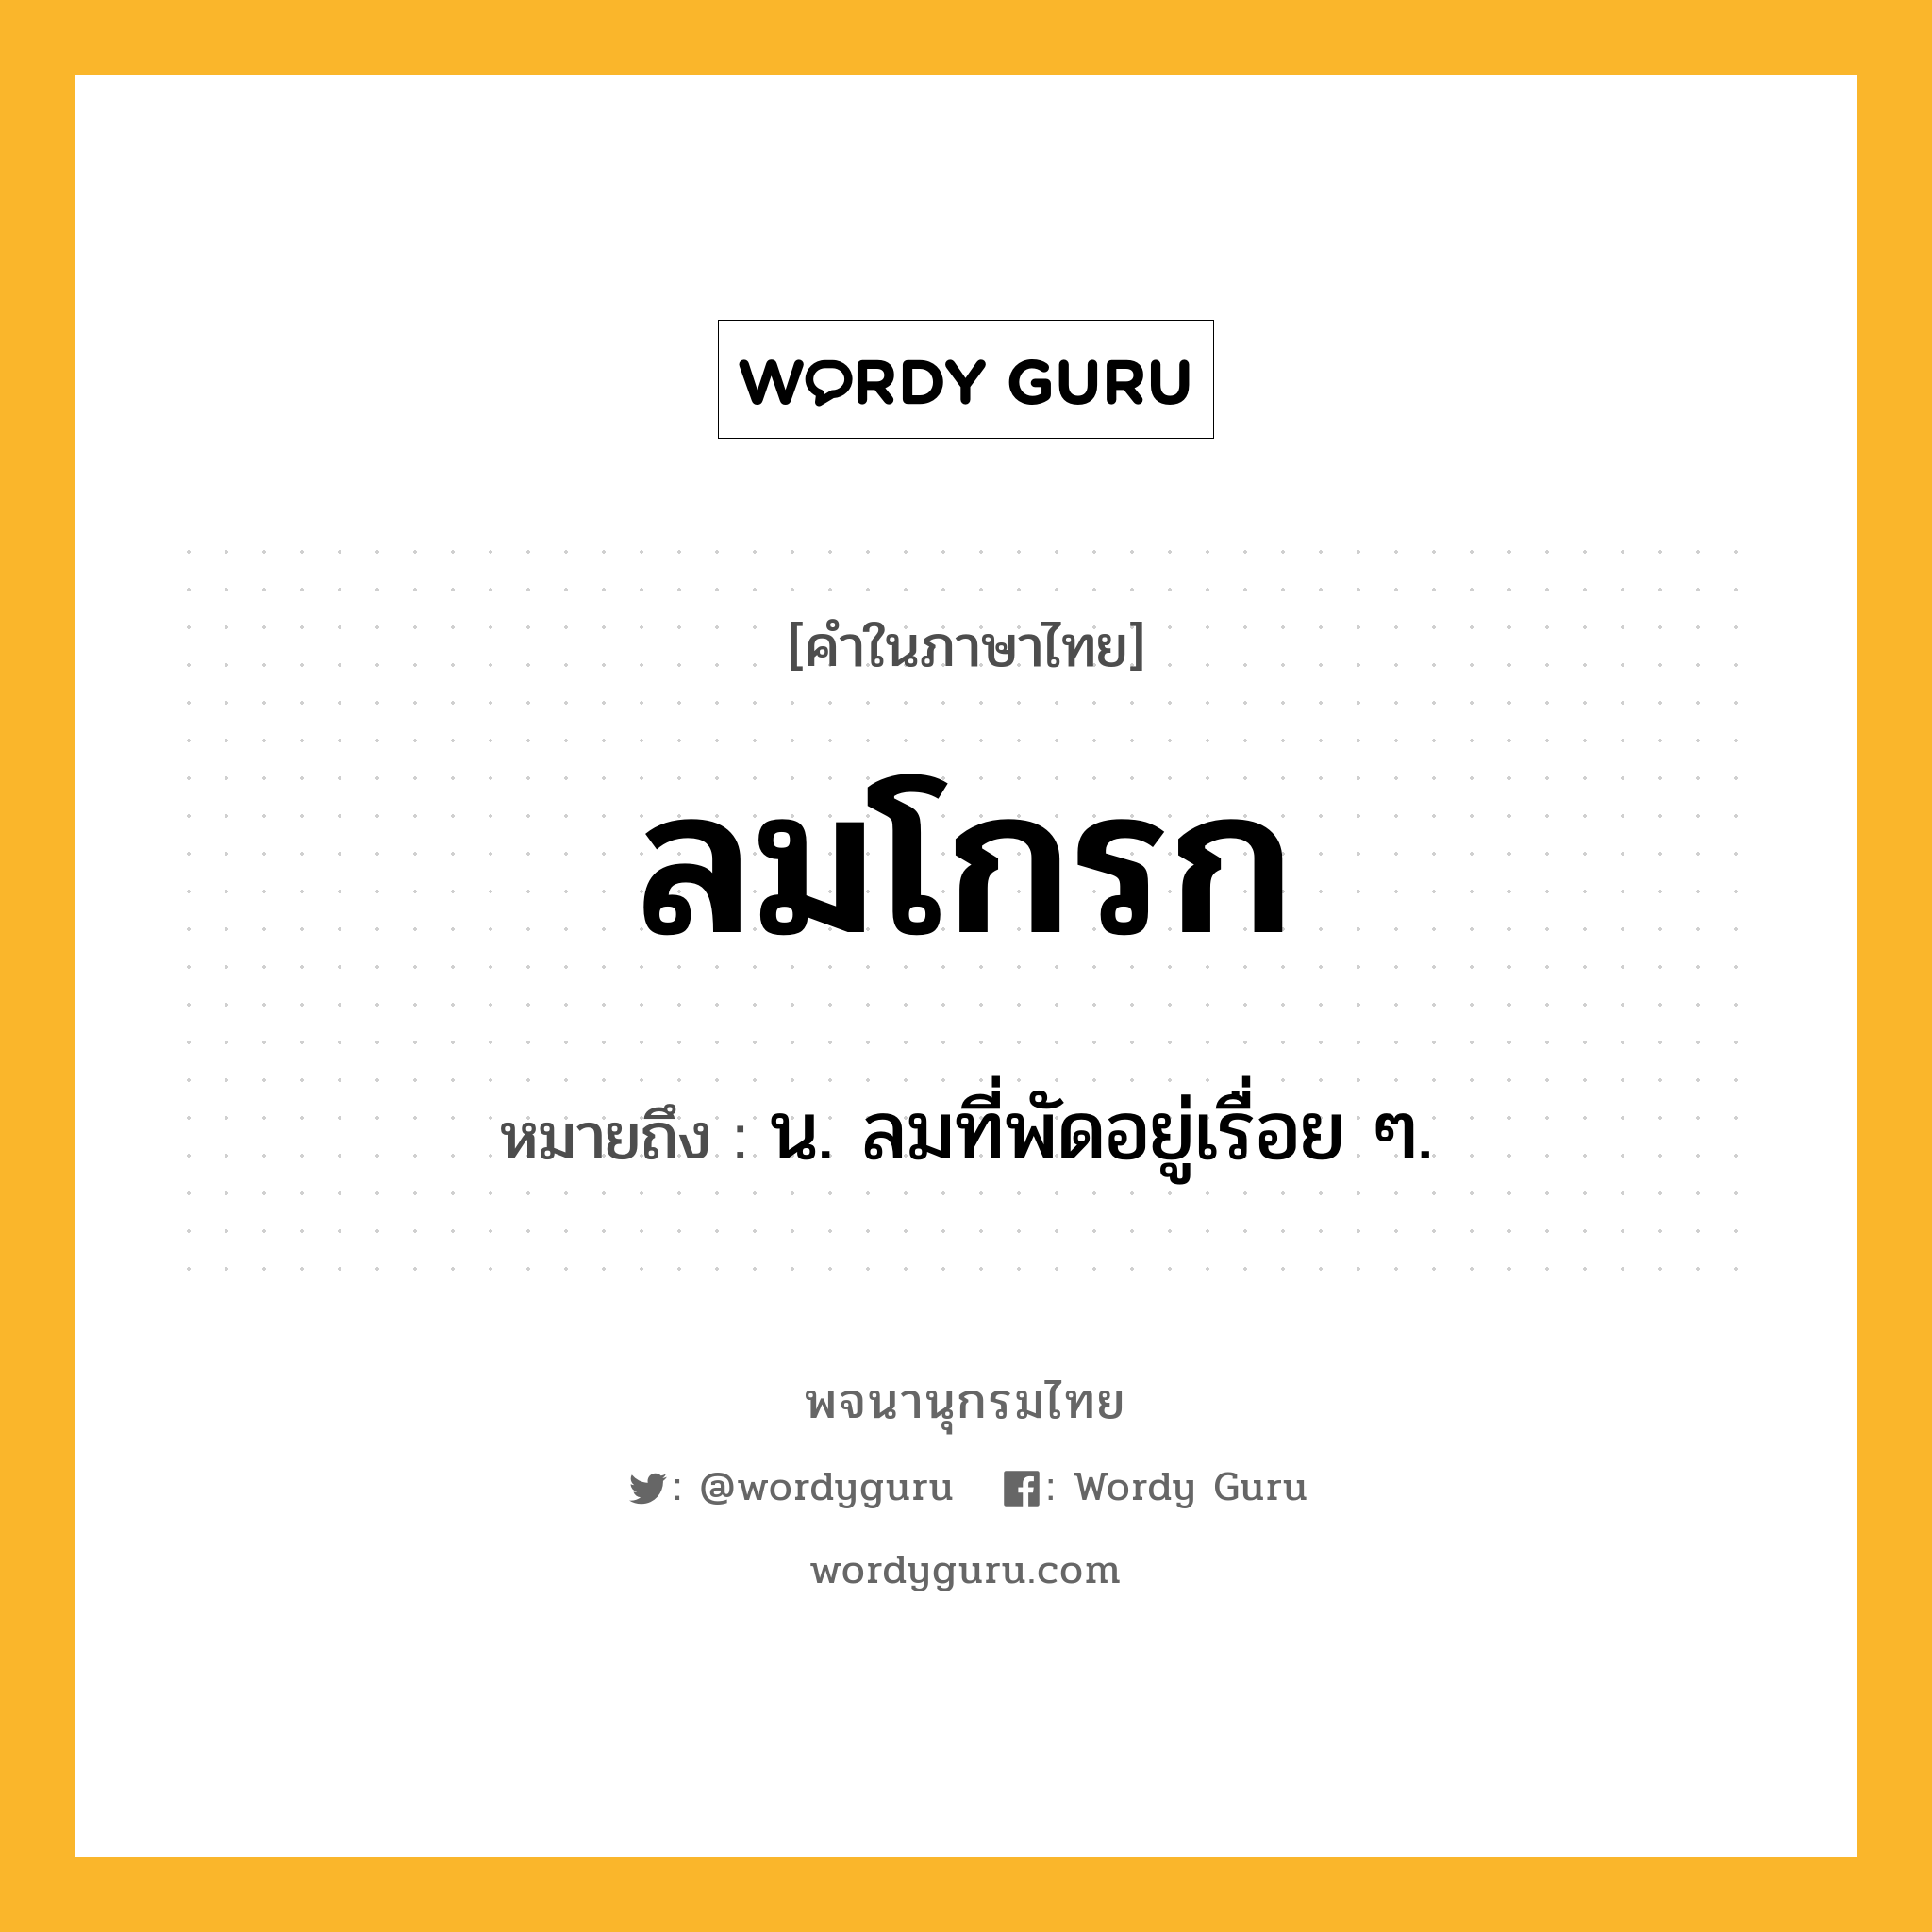 ลมโกรก ความหมาย หมายถึงอะไร?, คำในภาษาไทย ลมโกรก หมายถึง น. ลมที่พัดอยู่เรื่อย ๆ.